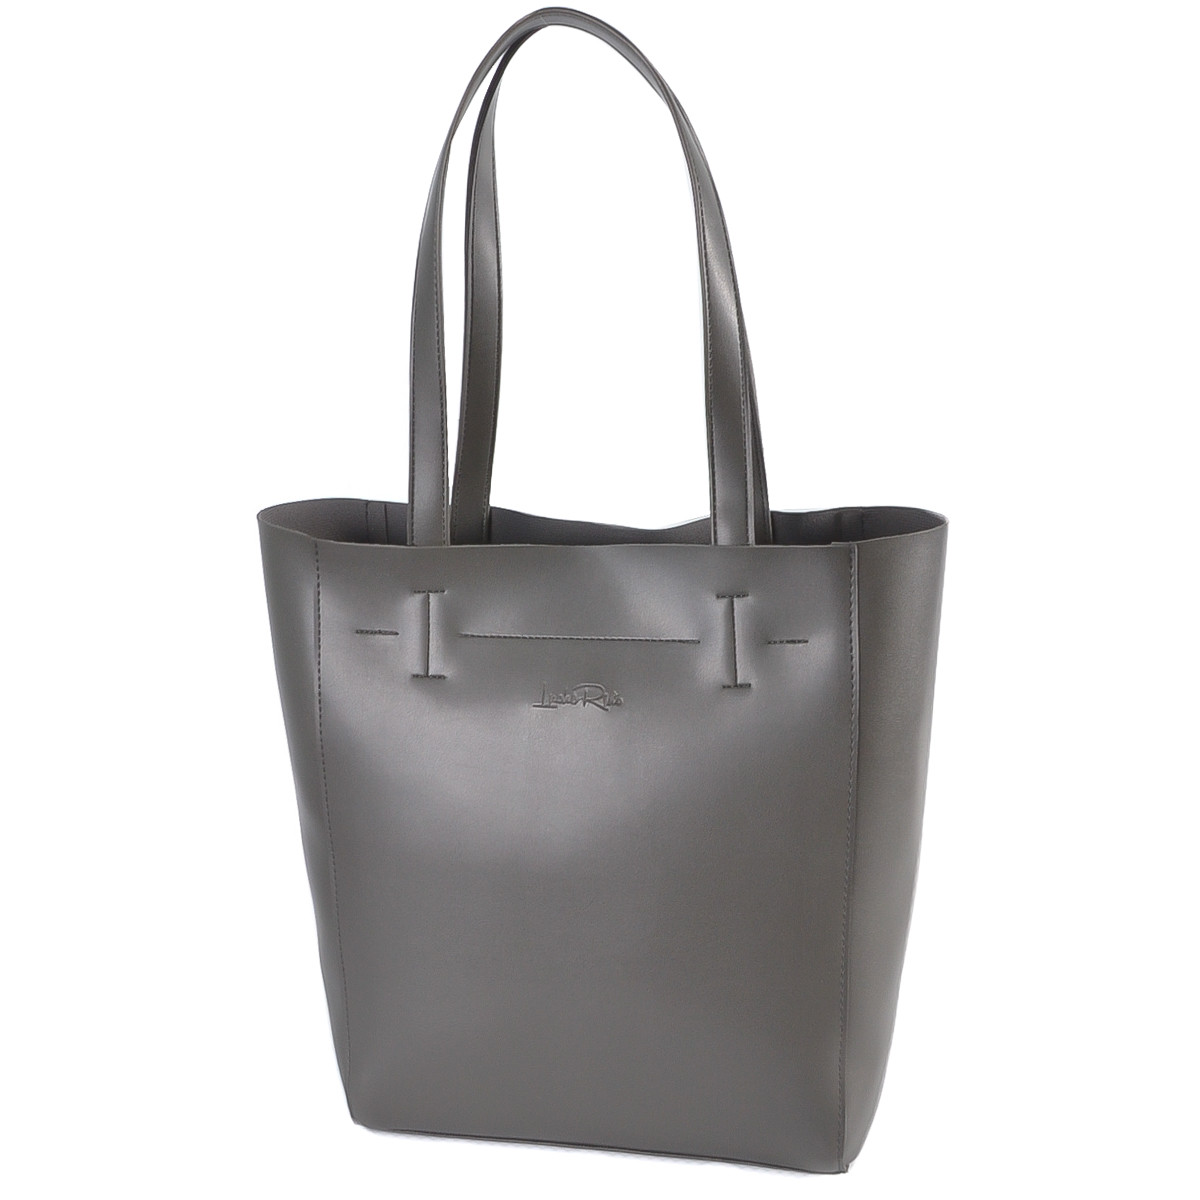 ГРАФІТ — фабрична сумка-шопер із простим кроєм і мінімальним оздобленням (Луцьк, 518)